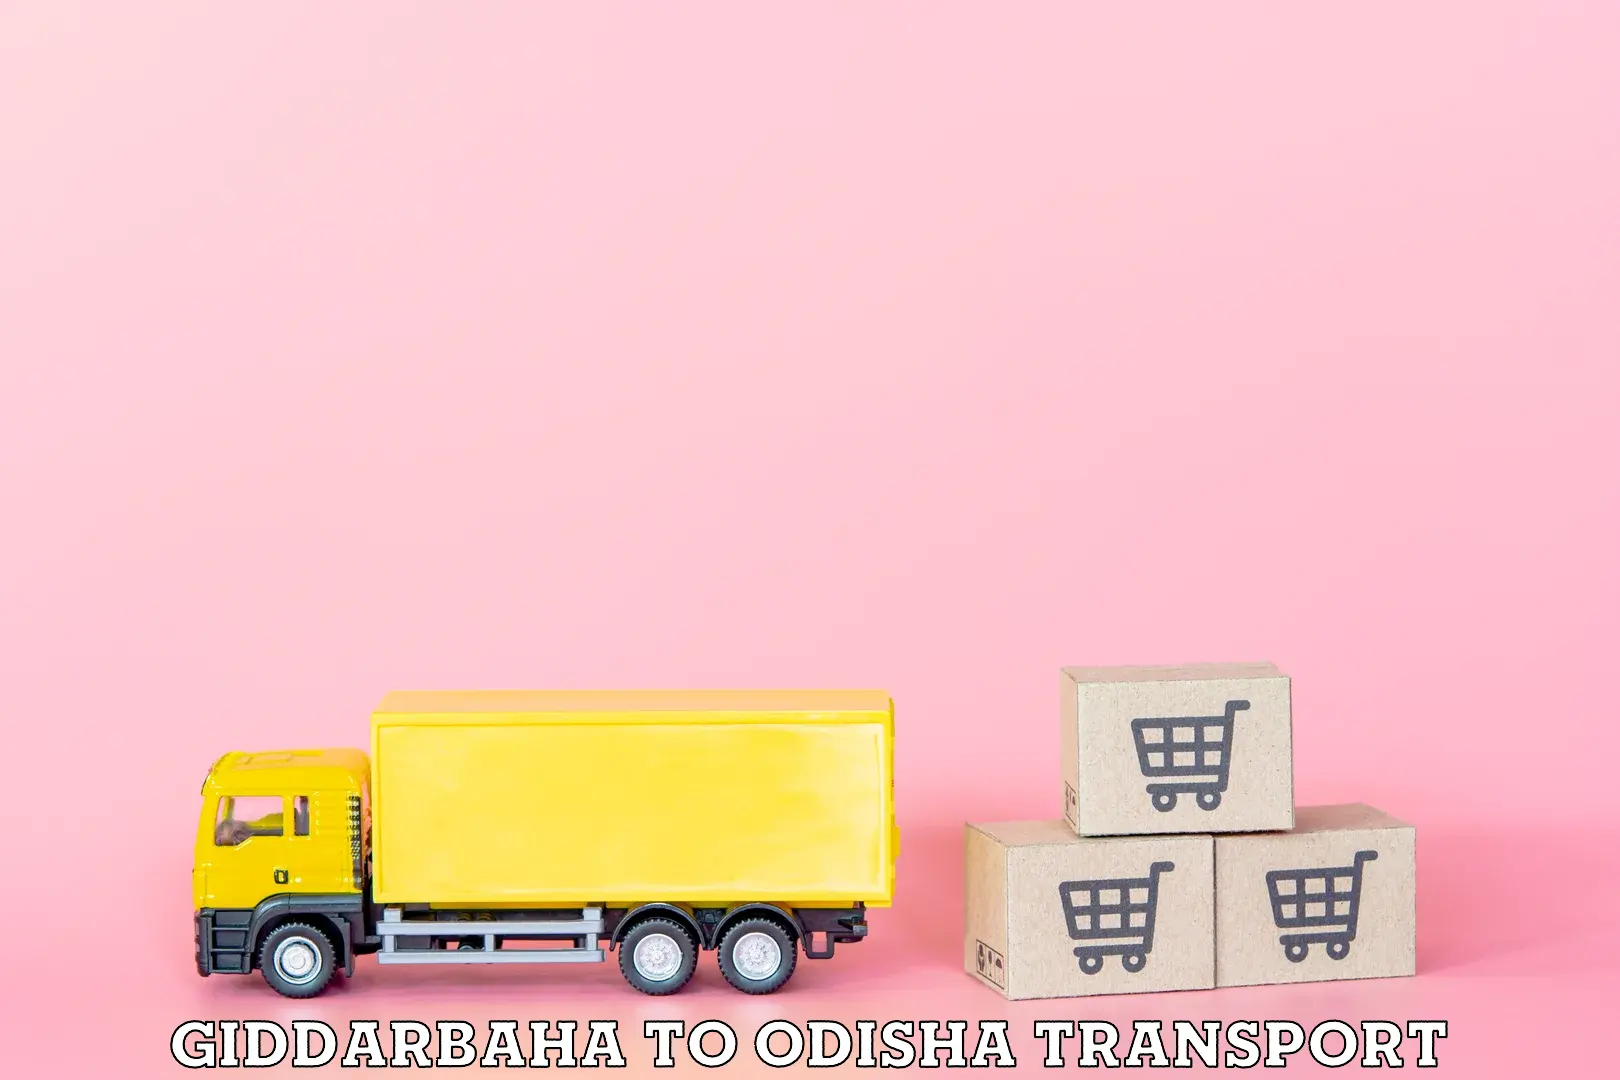 Goods transport services Giddarbaha to Bamra